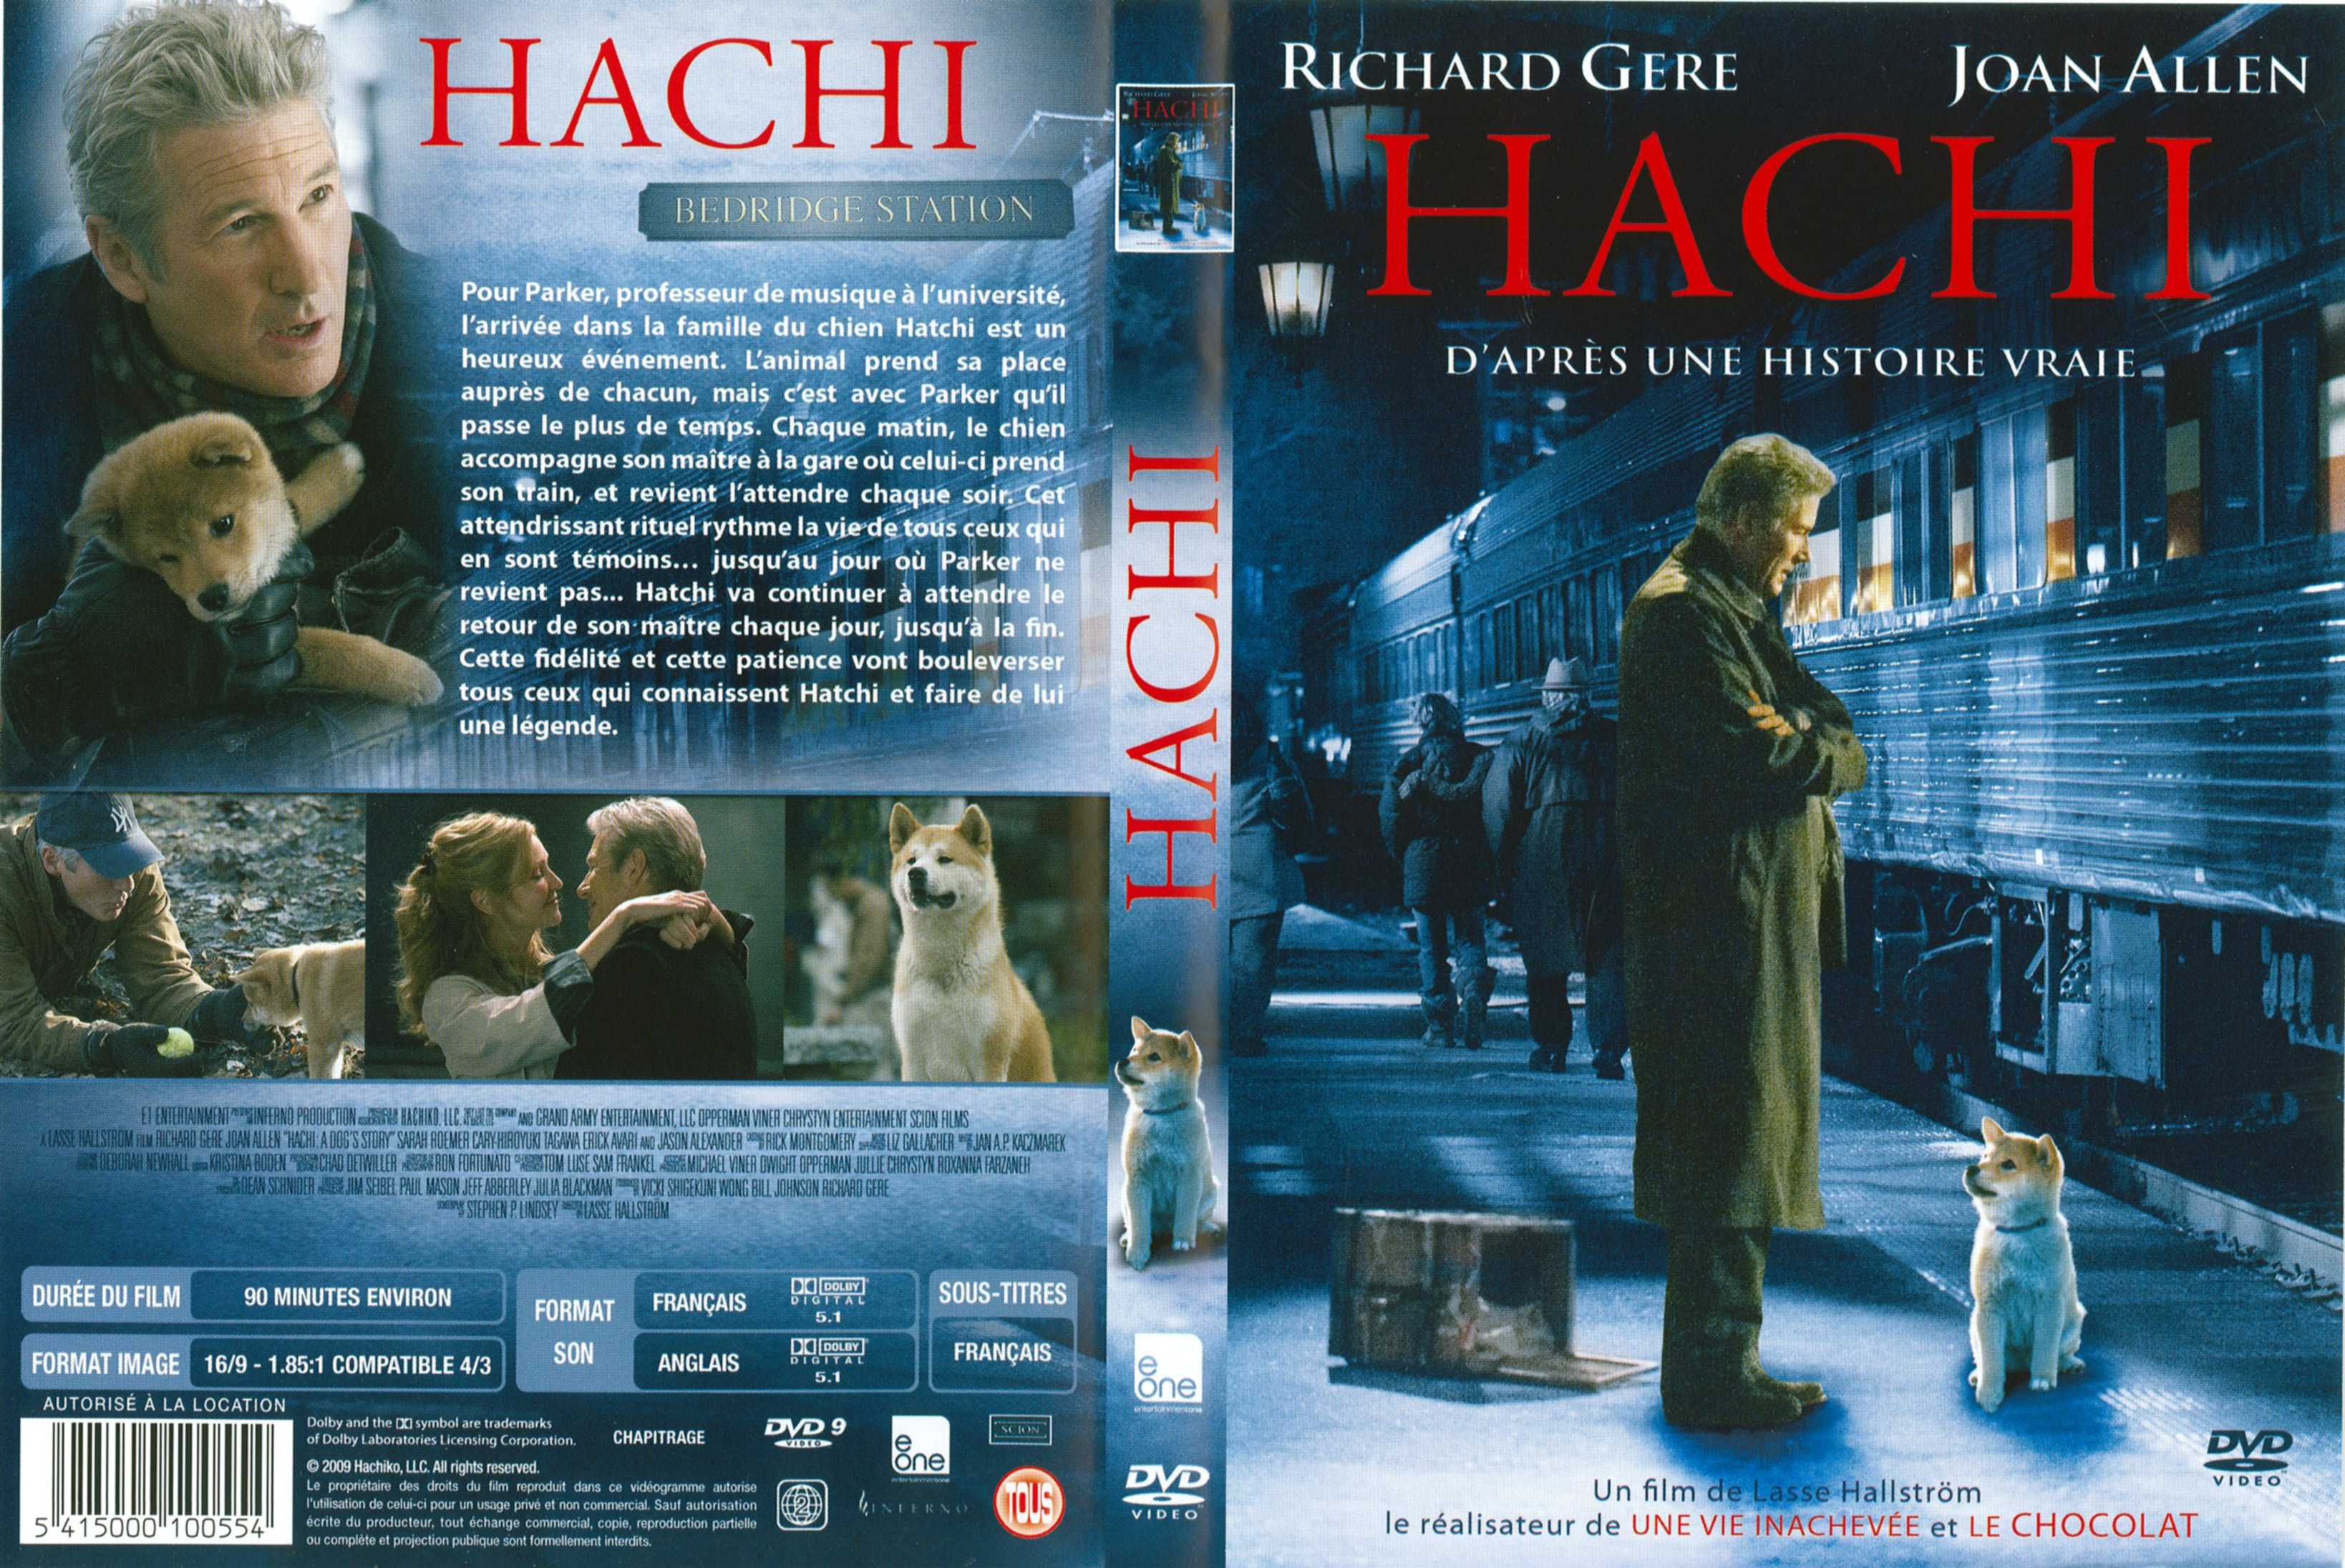 Jaquette DVD Hatchi v3